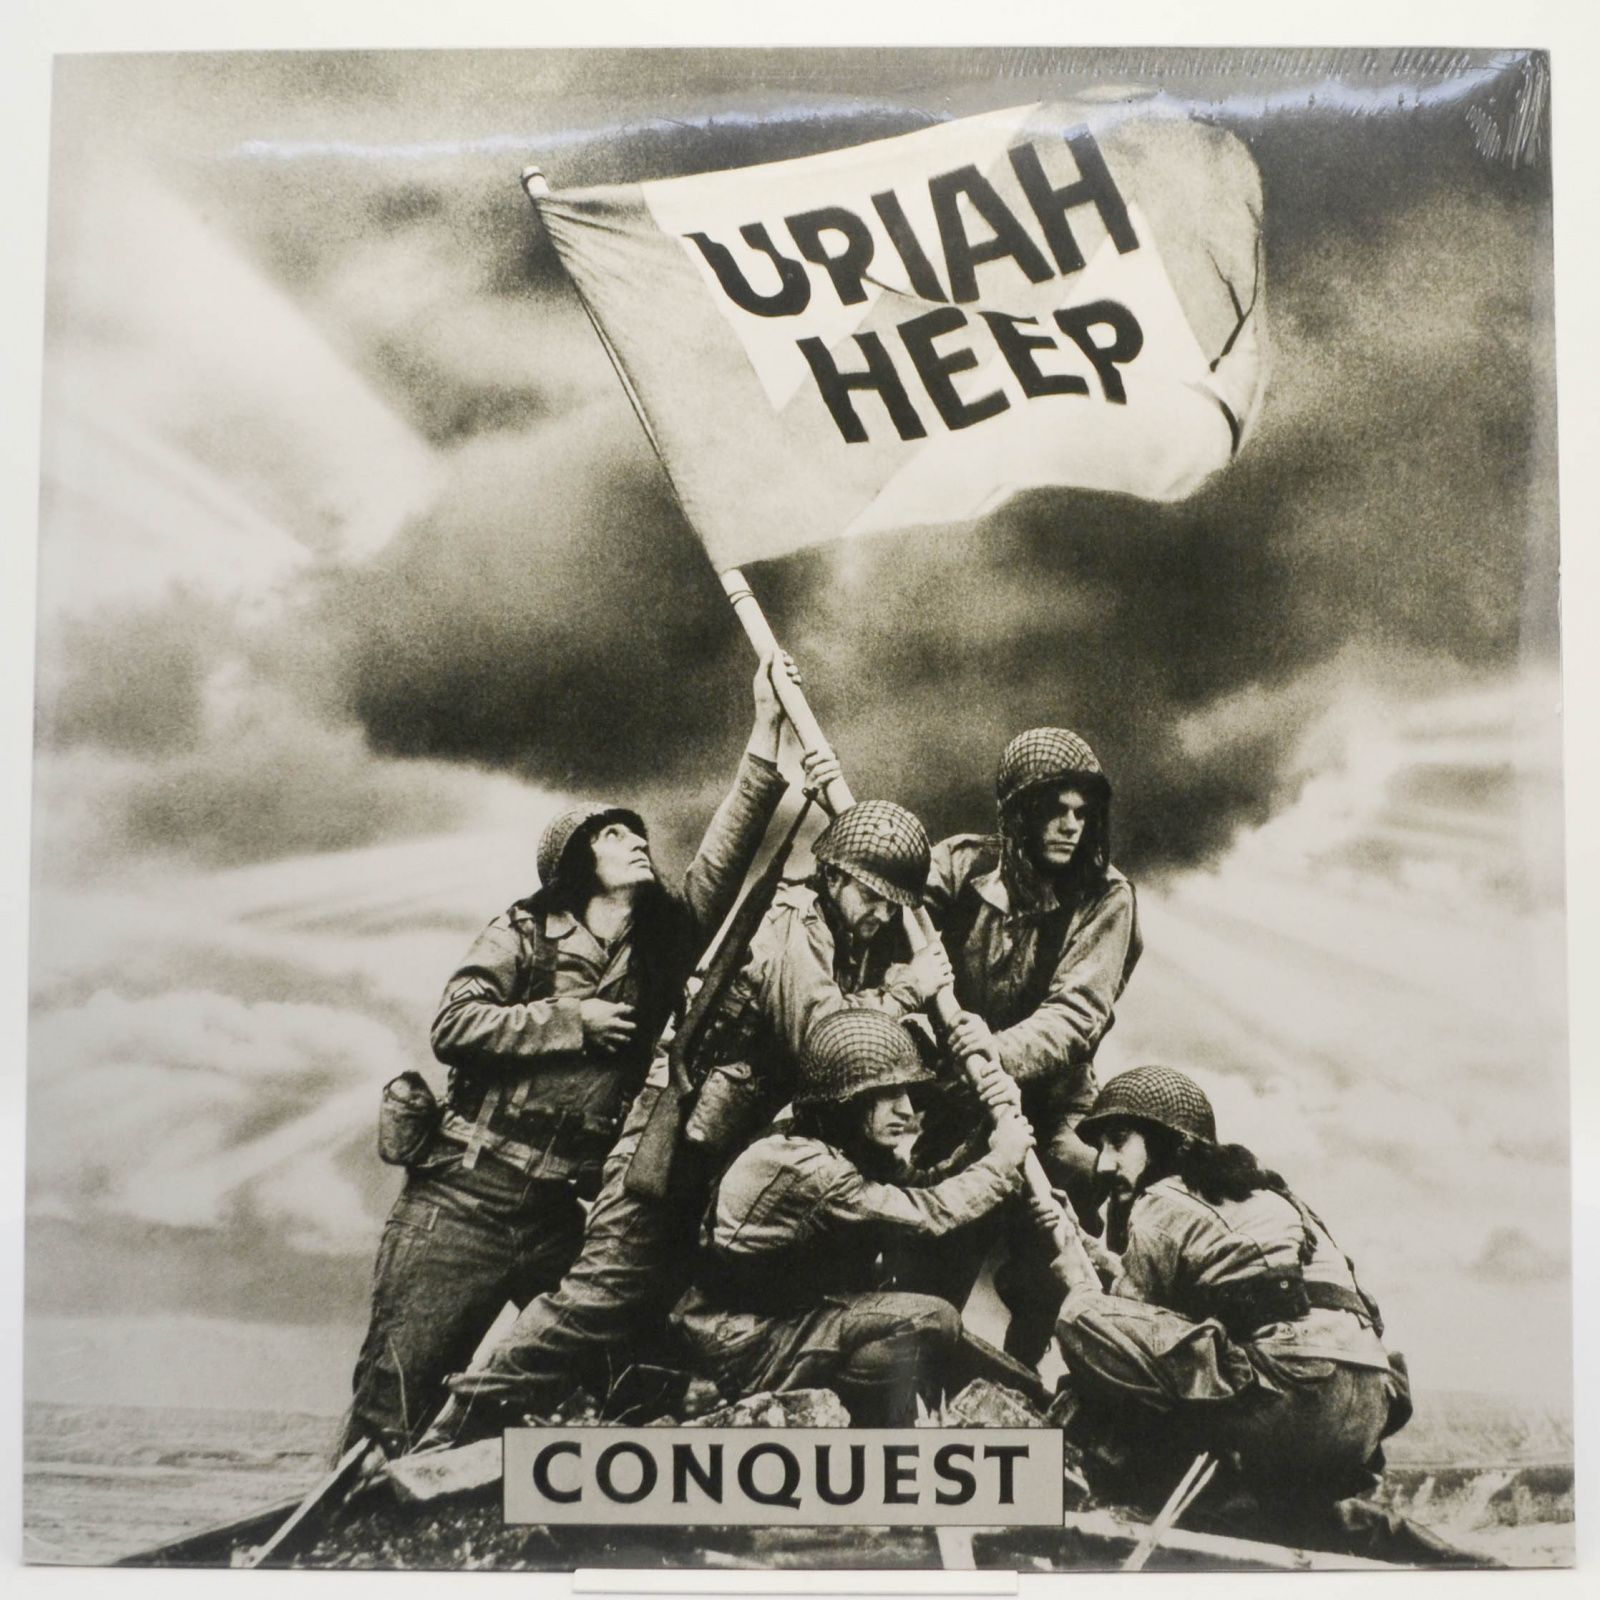 Uriah Heep — Conquest, 2015